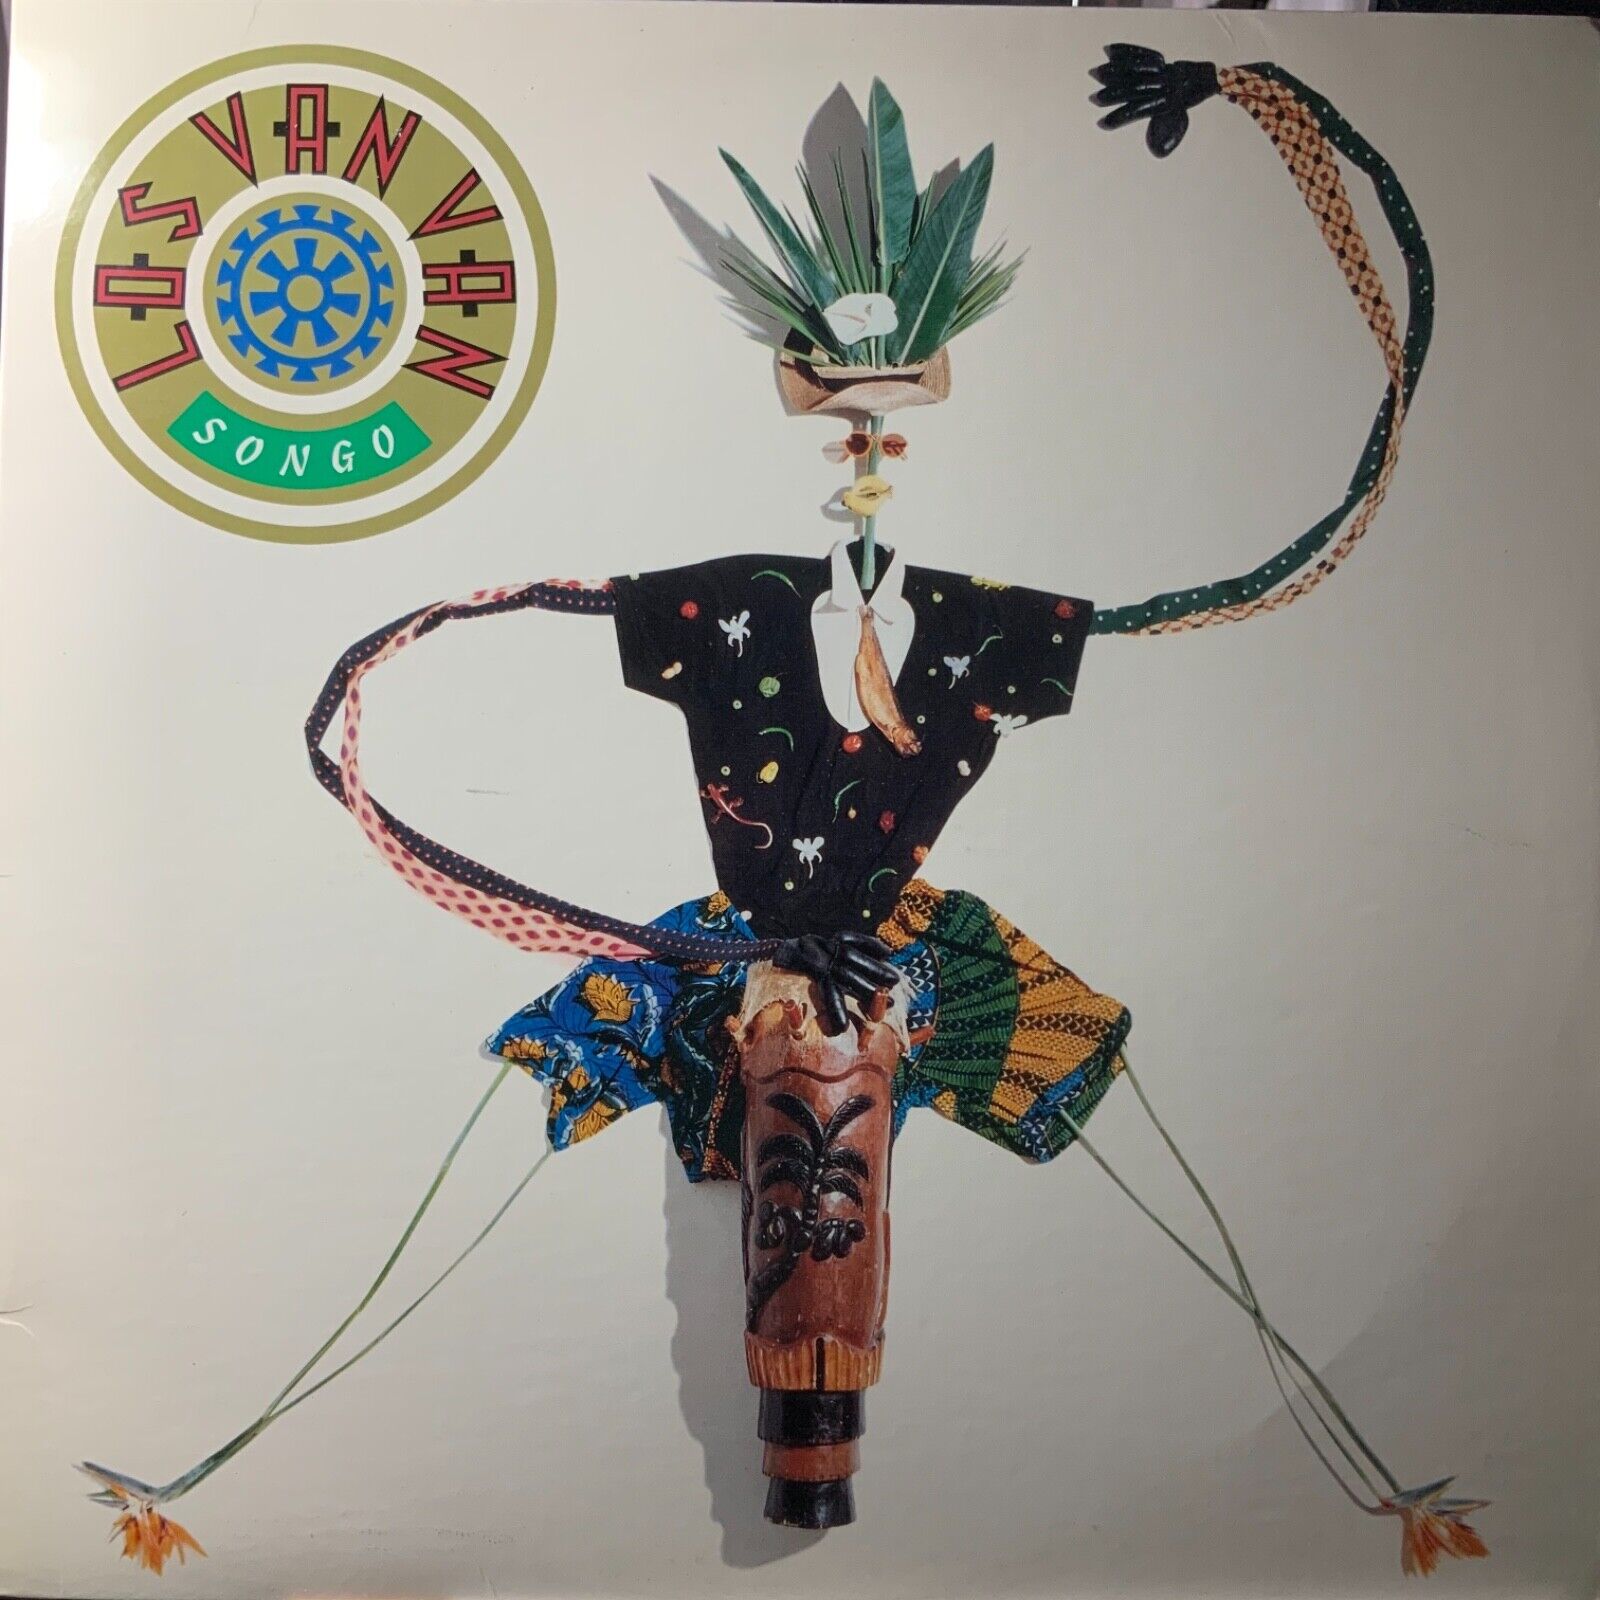 LOS VAN VAN-SONGO-ORIGINAL 1988 ISLAND RECORDS VINYL-USED-VINTAGE